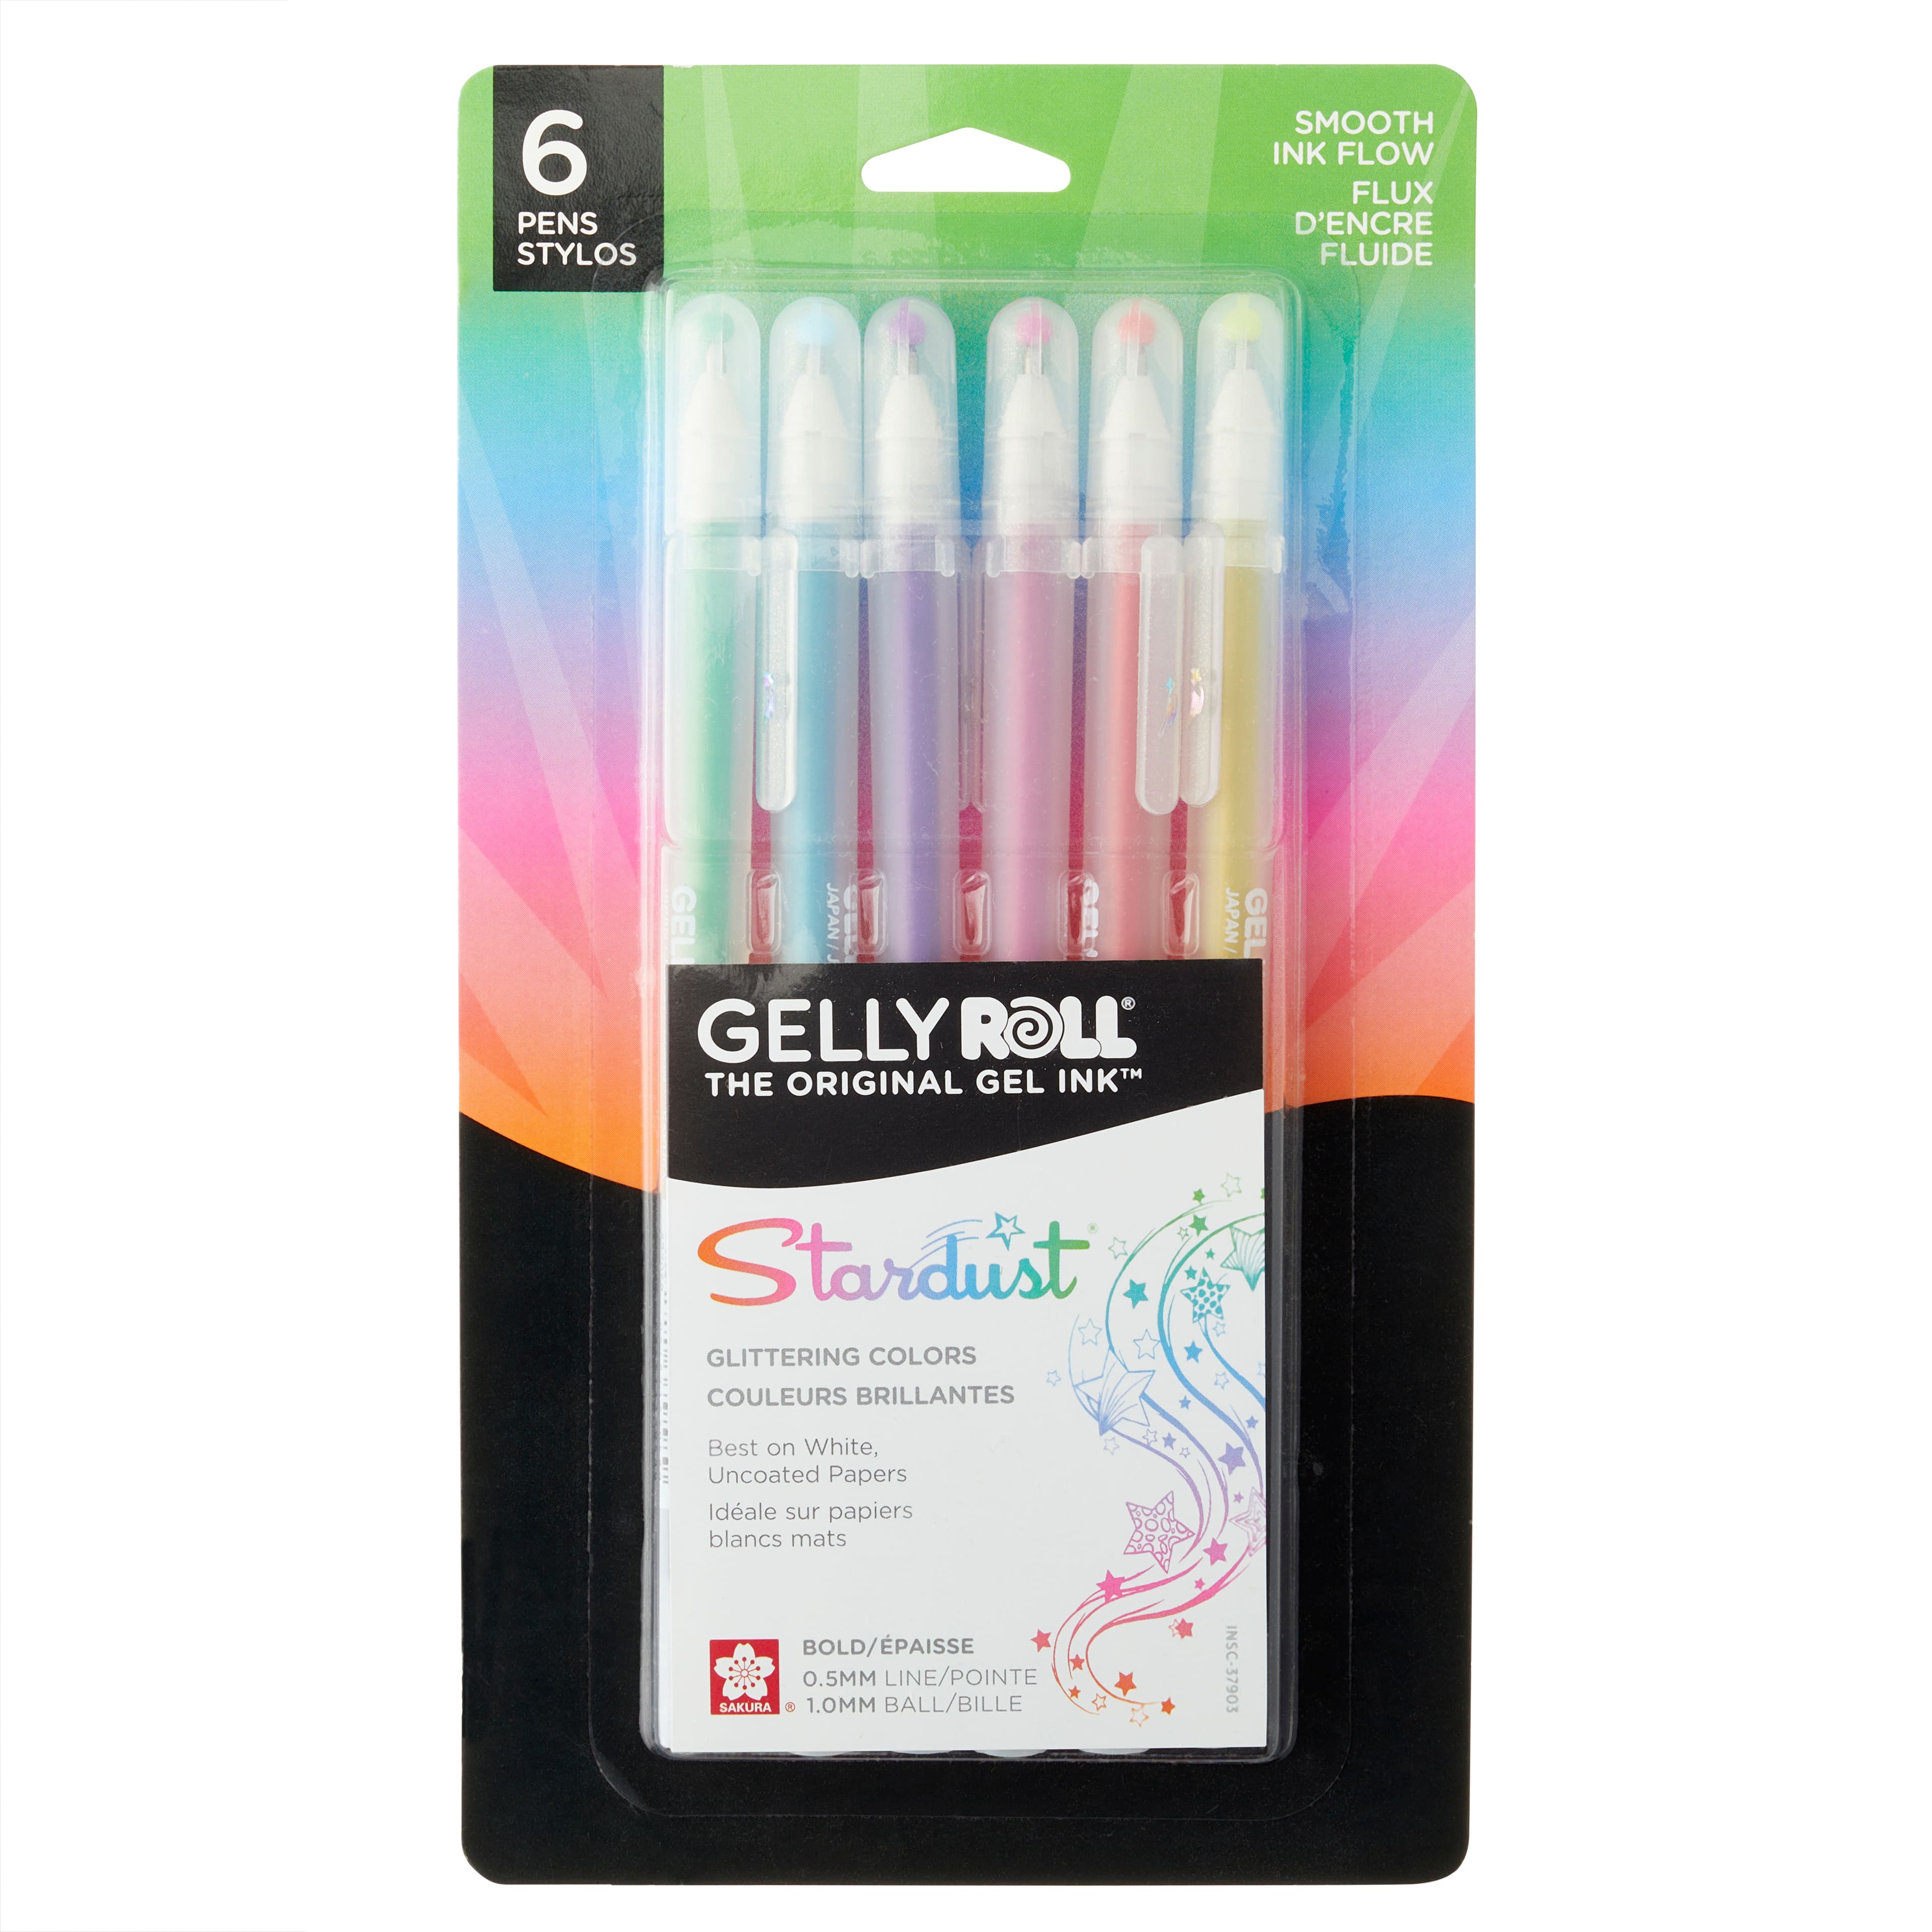 Metallic Galaxy Highlighter Pen Set - Assortment of 8 Subtle Glitter Markers